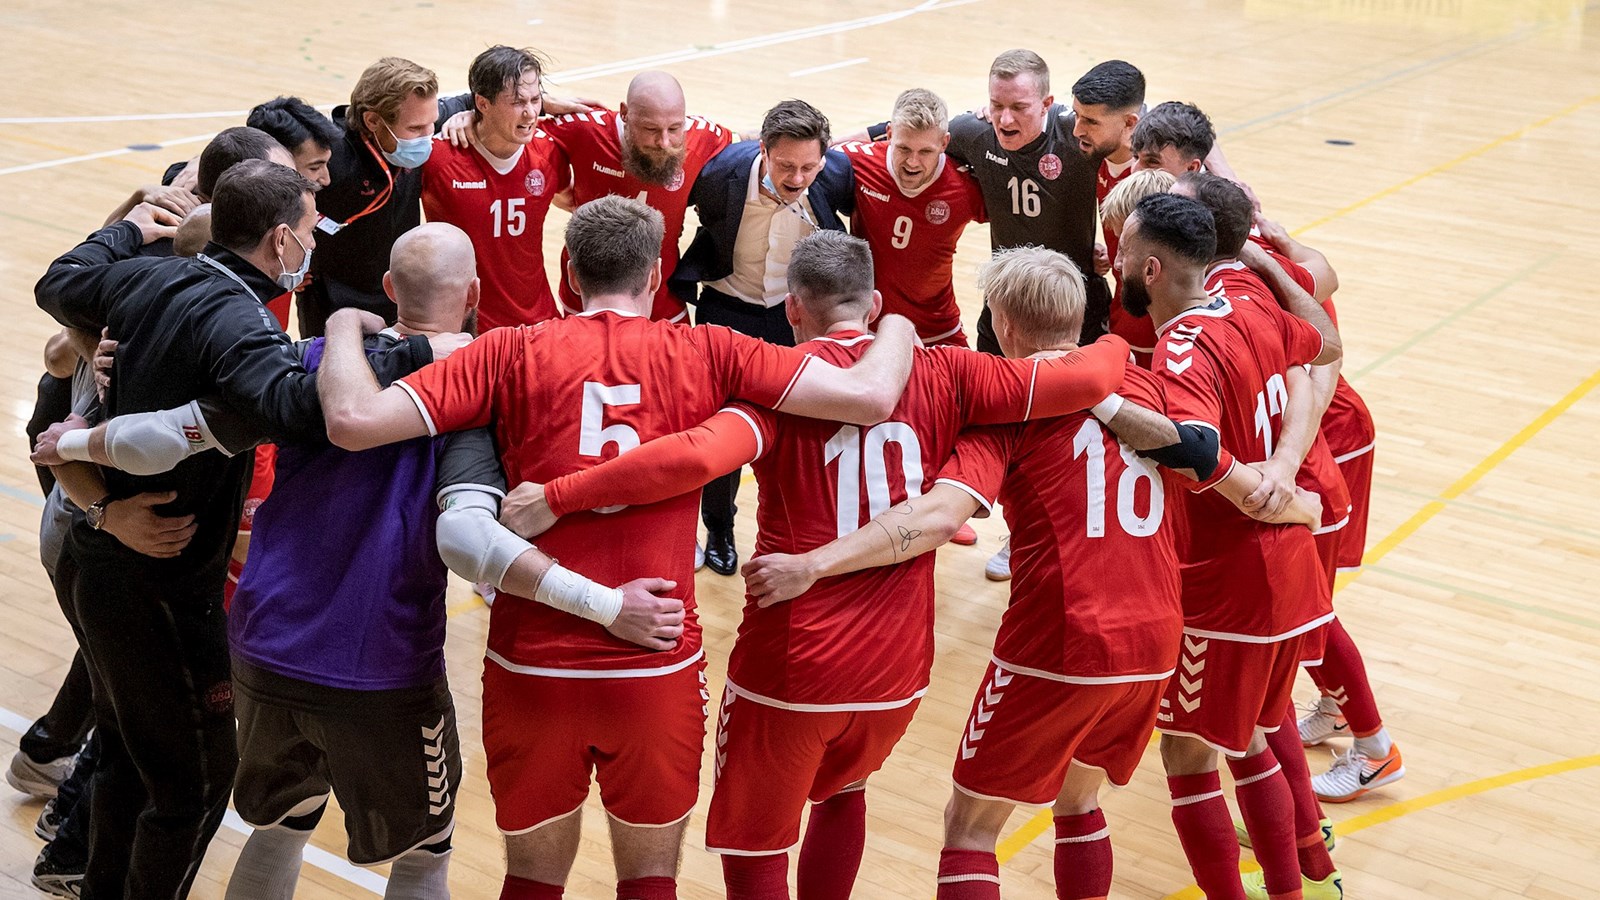 Futsal-landsholdet kender nu kommende modstandere i VM-kvalifikationen